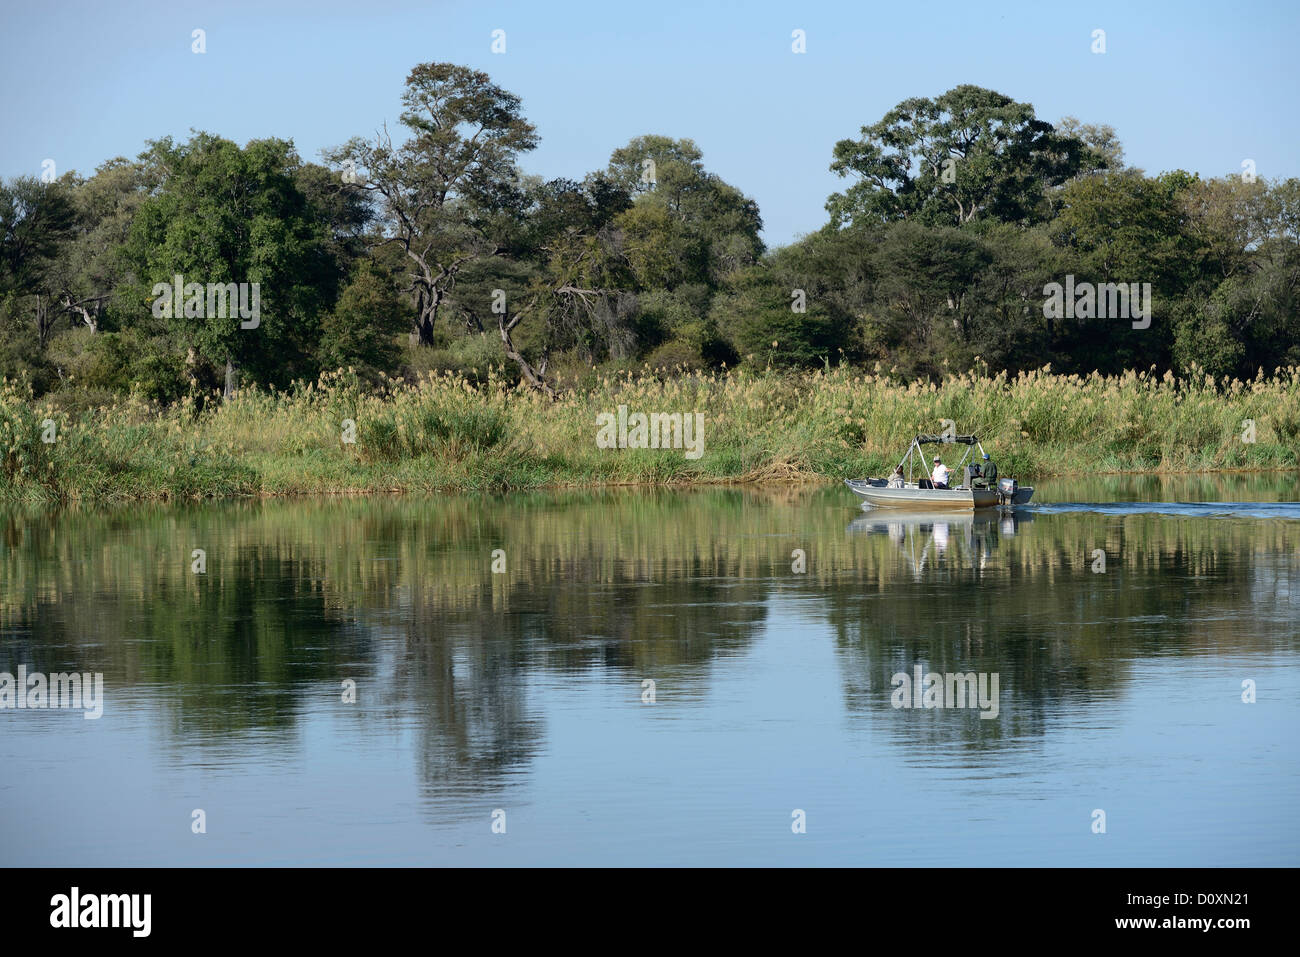 Africa, Namibia, Okavango, fiume, Caprivi Strip, barca, pesca, canne, natura, Caprivi, Foto Stock